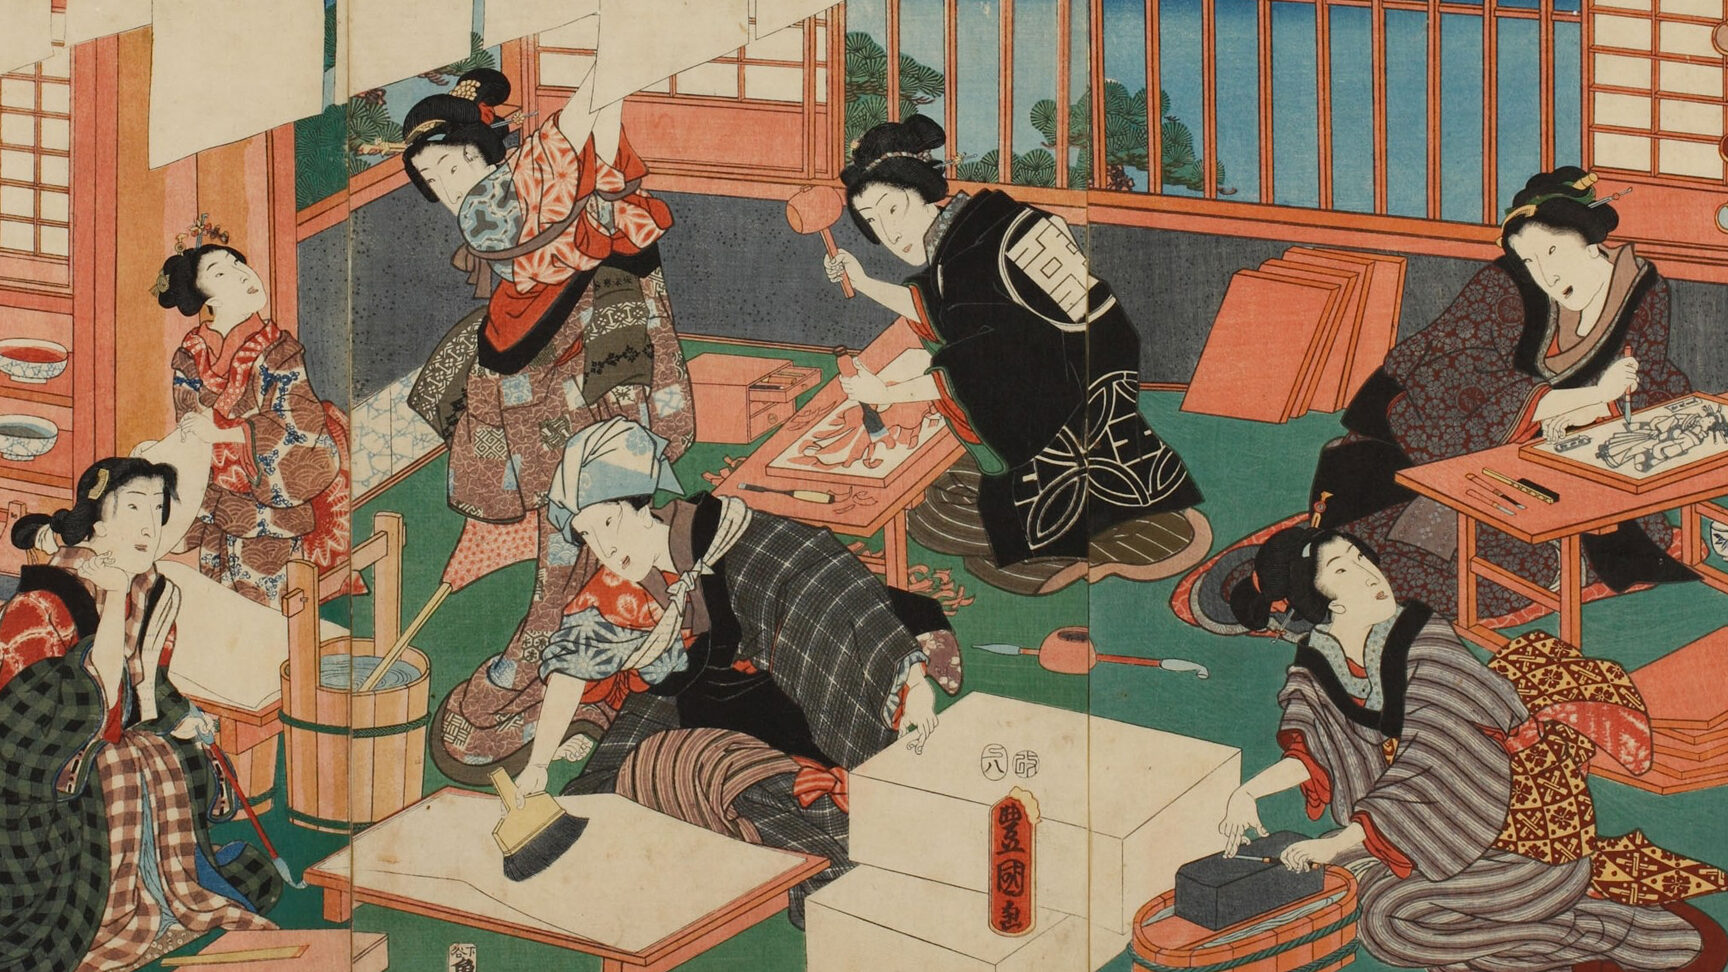 Cuadros japoneses famosos: obras destacadas de la pintura tradicional japonesa.